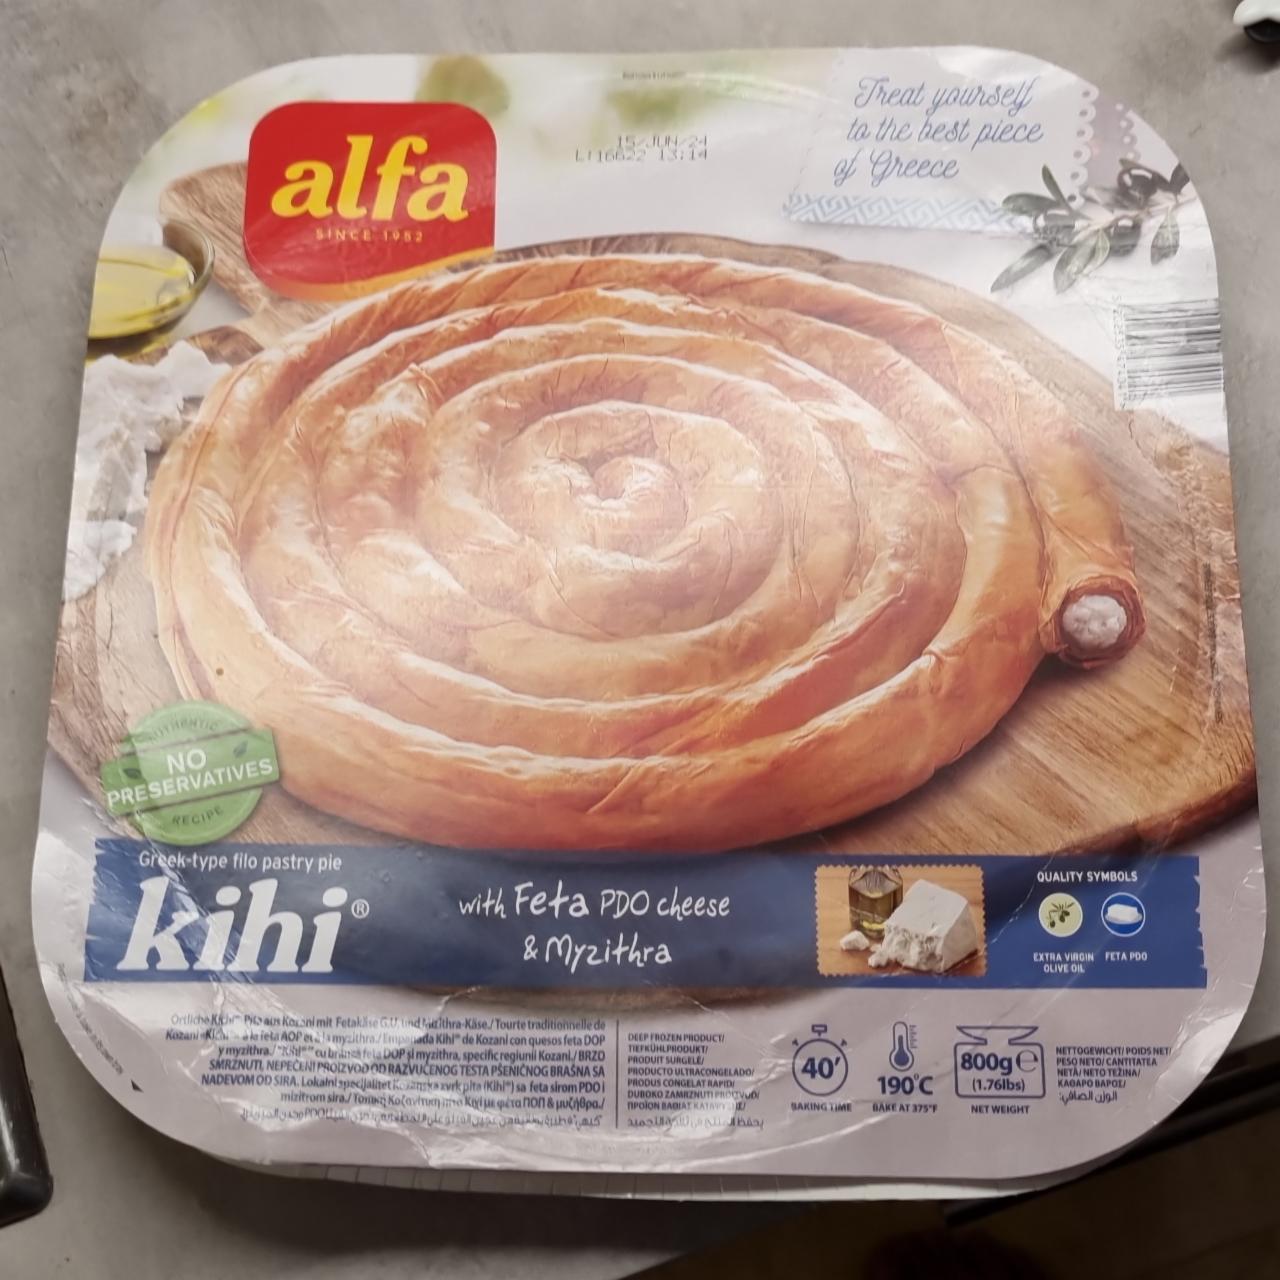 Fotografie - Kihi Greek-type Filo Pastry Pie with Feta PDO cheese & Myzithra Alfa